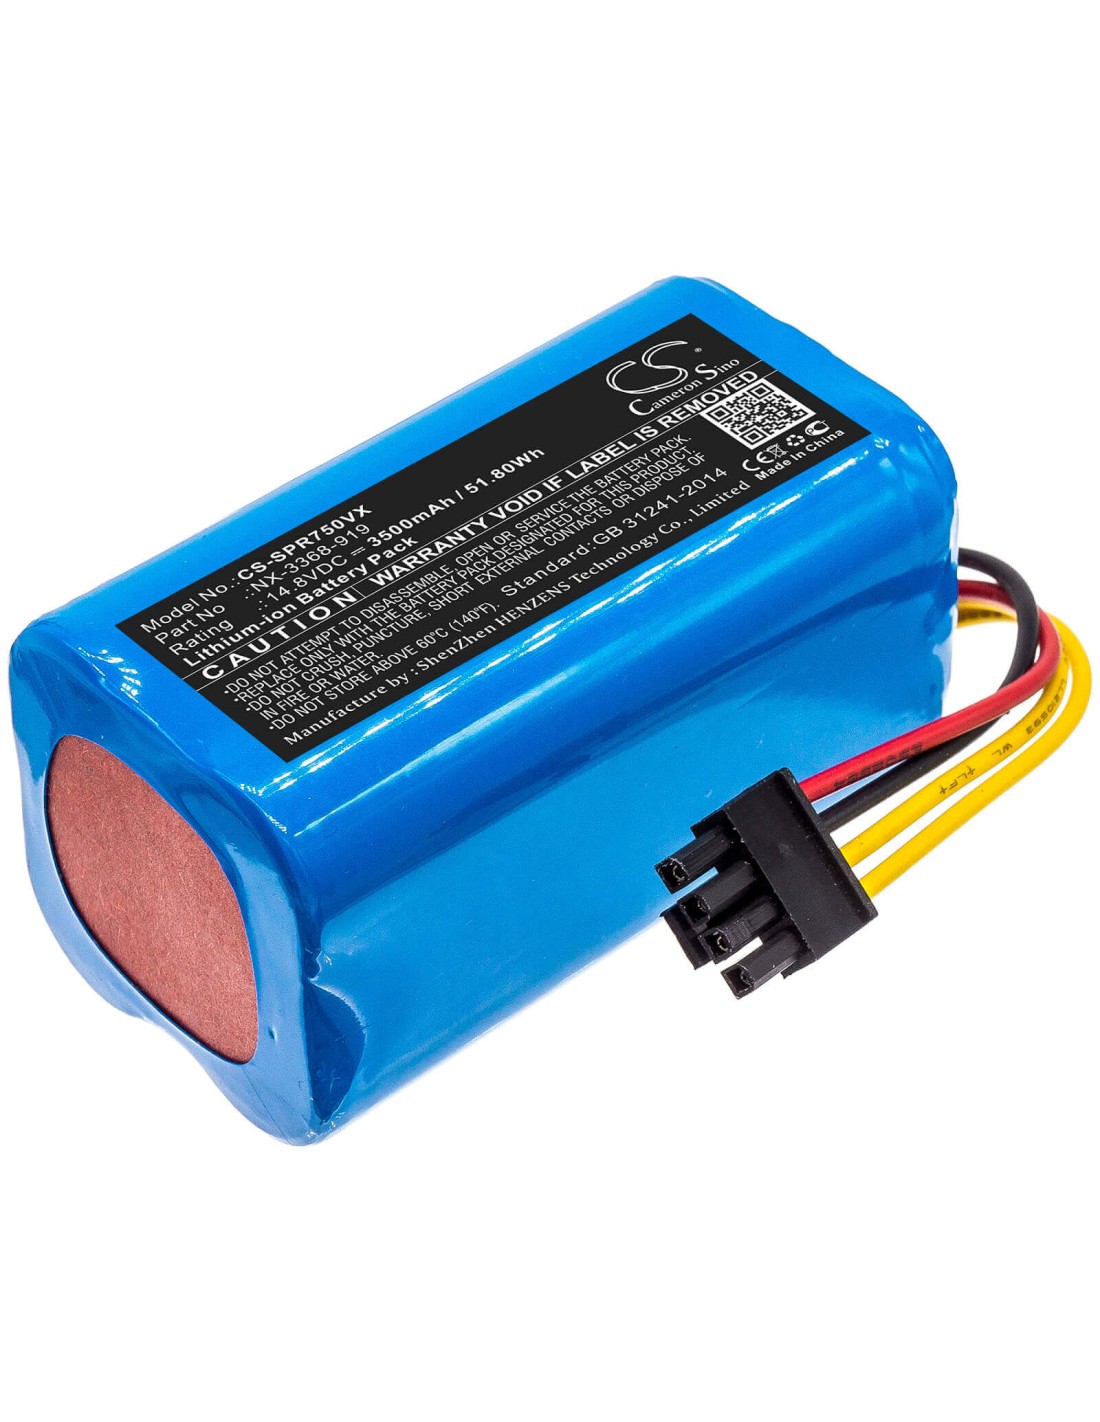 Battery for Sichler, Pcr-7500 14.8V, 3500mAh - 51.80Wh